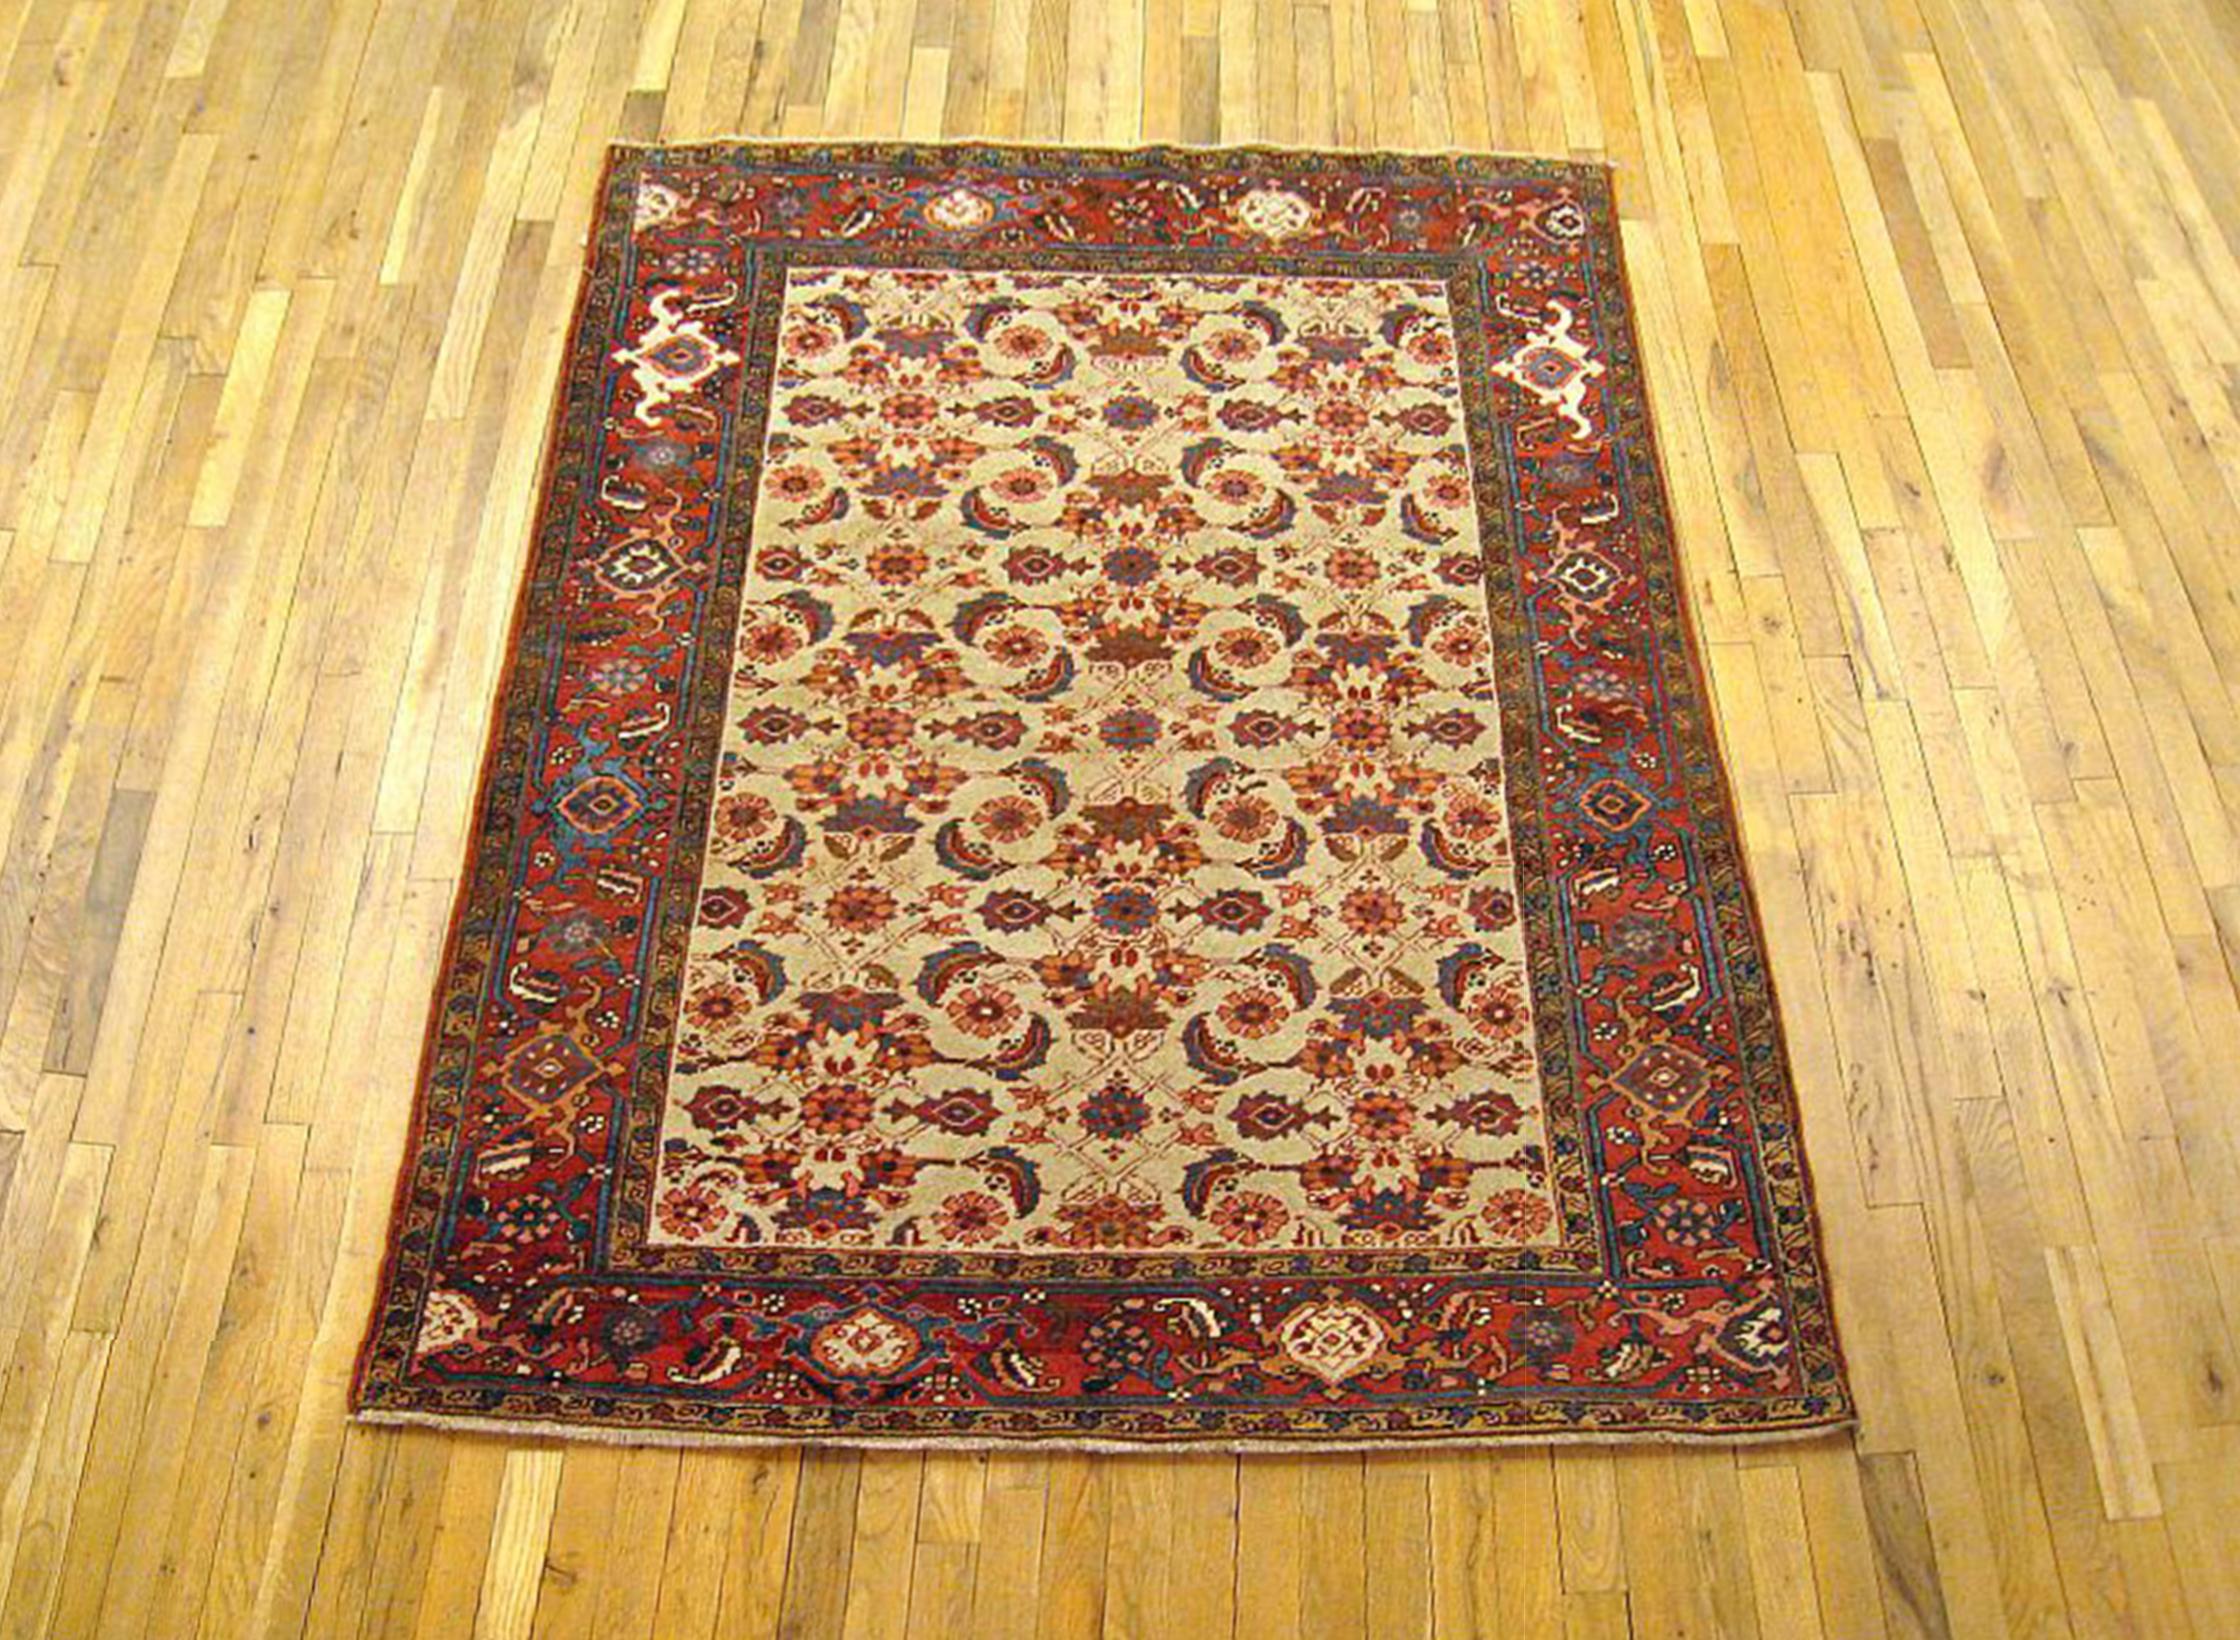 Antique Persian Heriz Karaja Oriental rug, in small size.

An antique Persian Heriz Karaja oriental rug, size 6'0